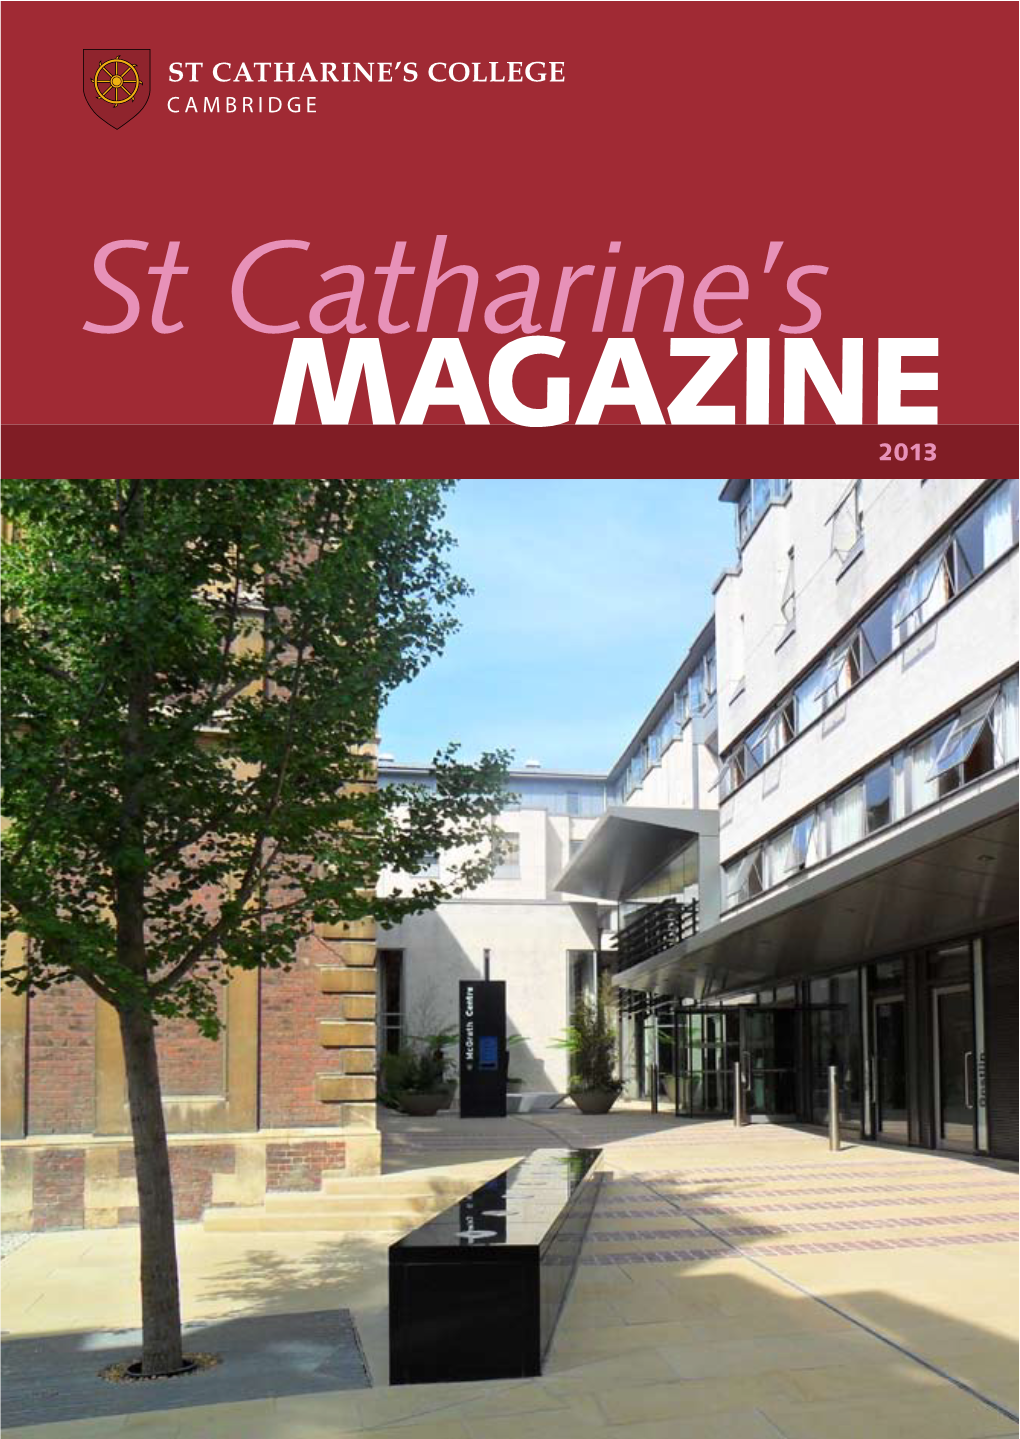 St Catharine's